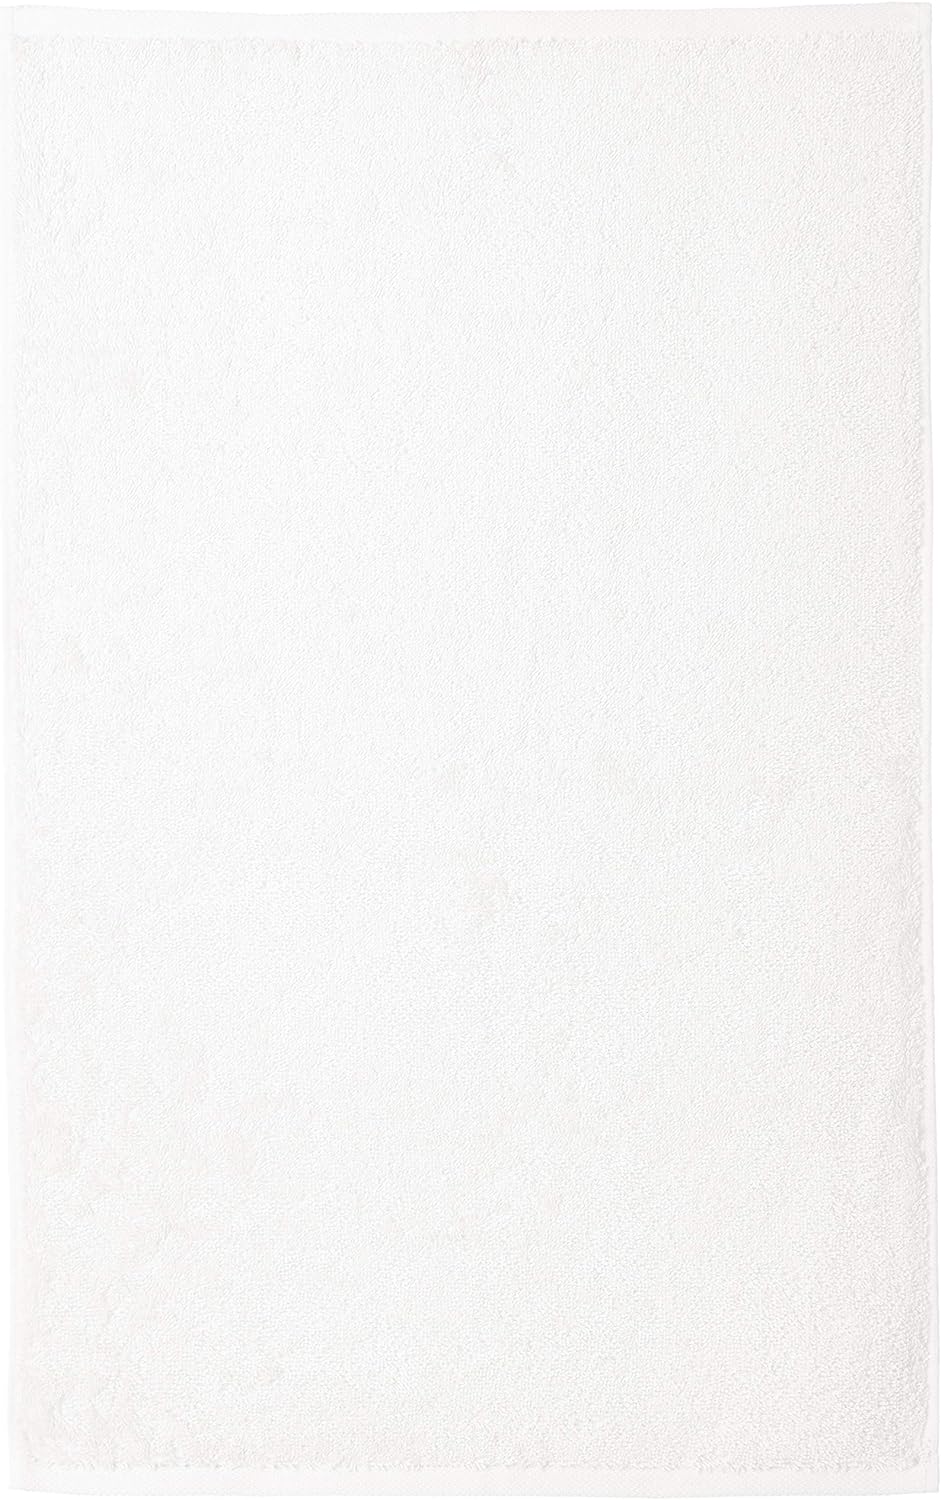 Tienda Basics Toalla de mano de algodón, paquete de 12, color blanco